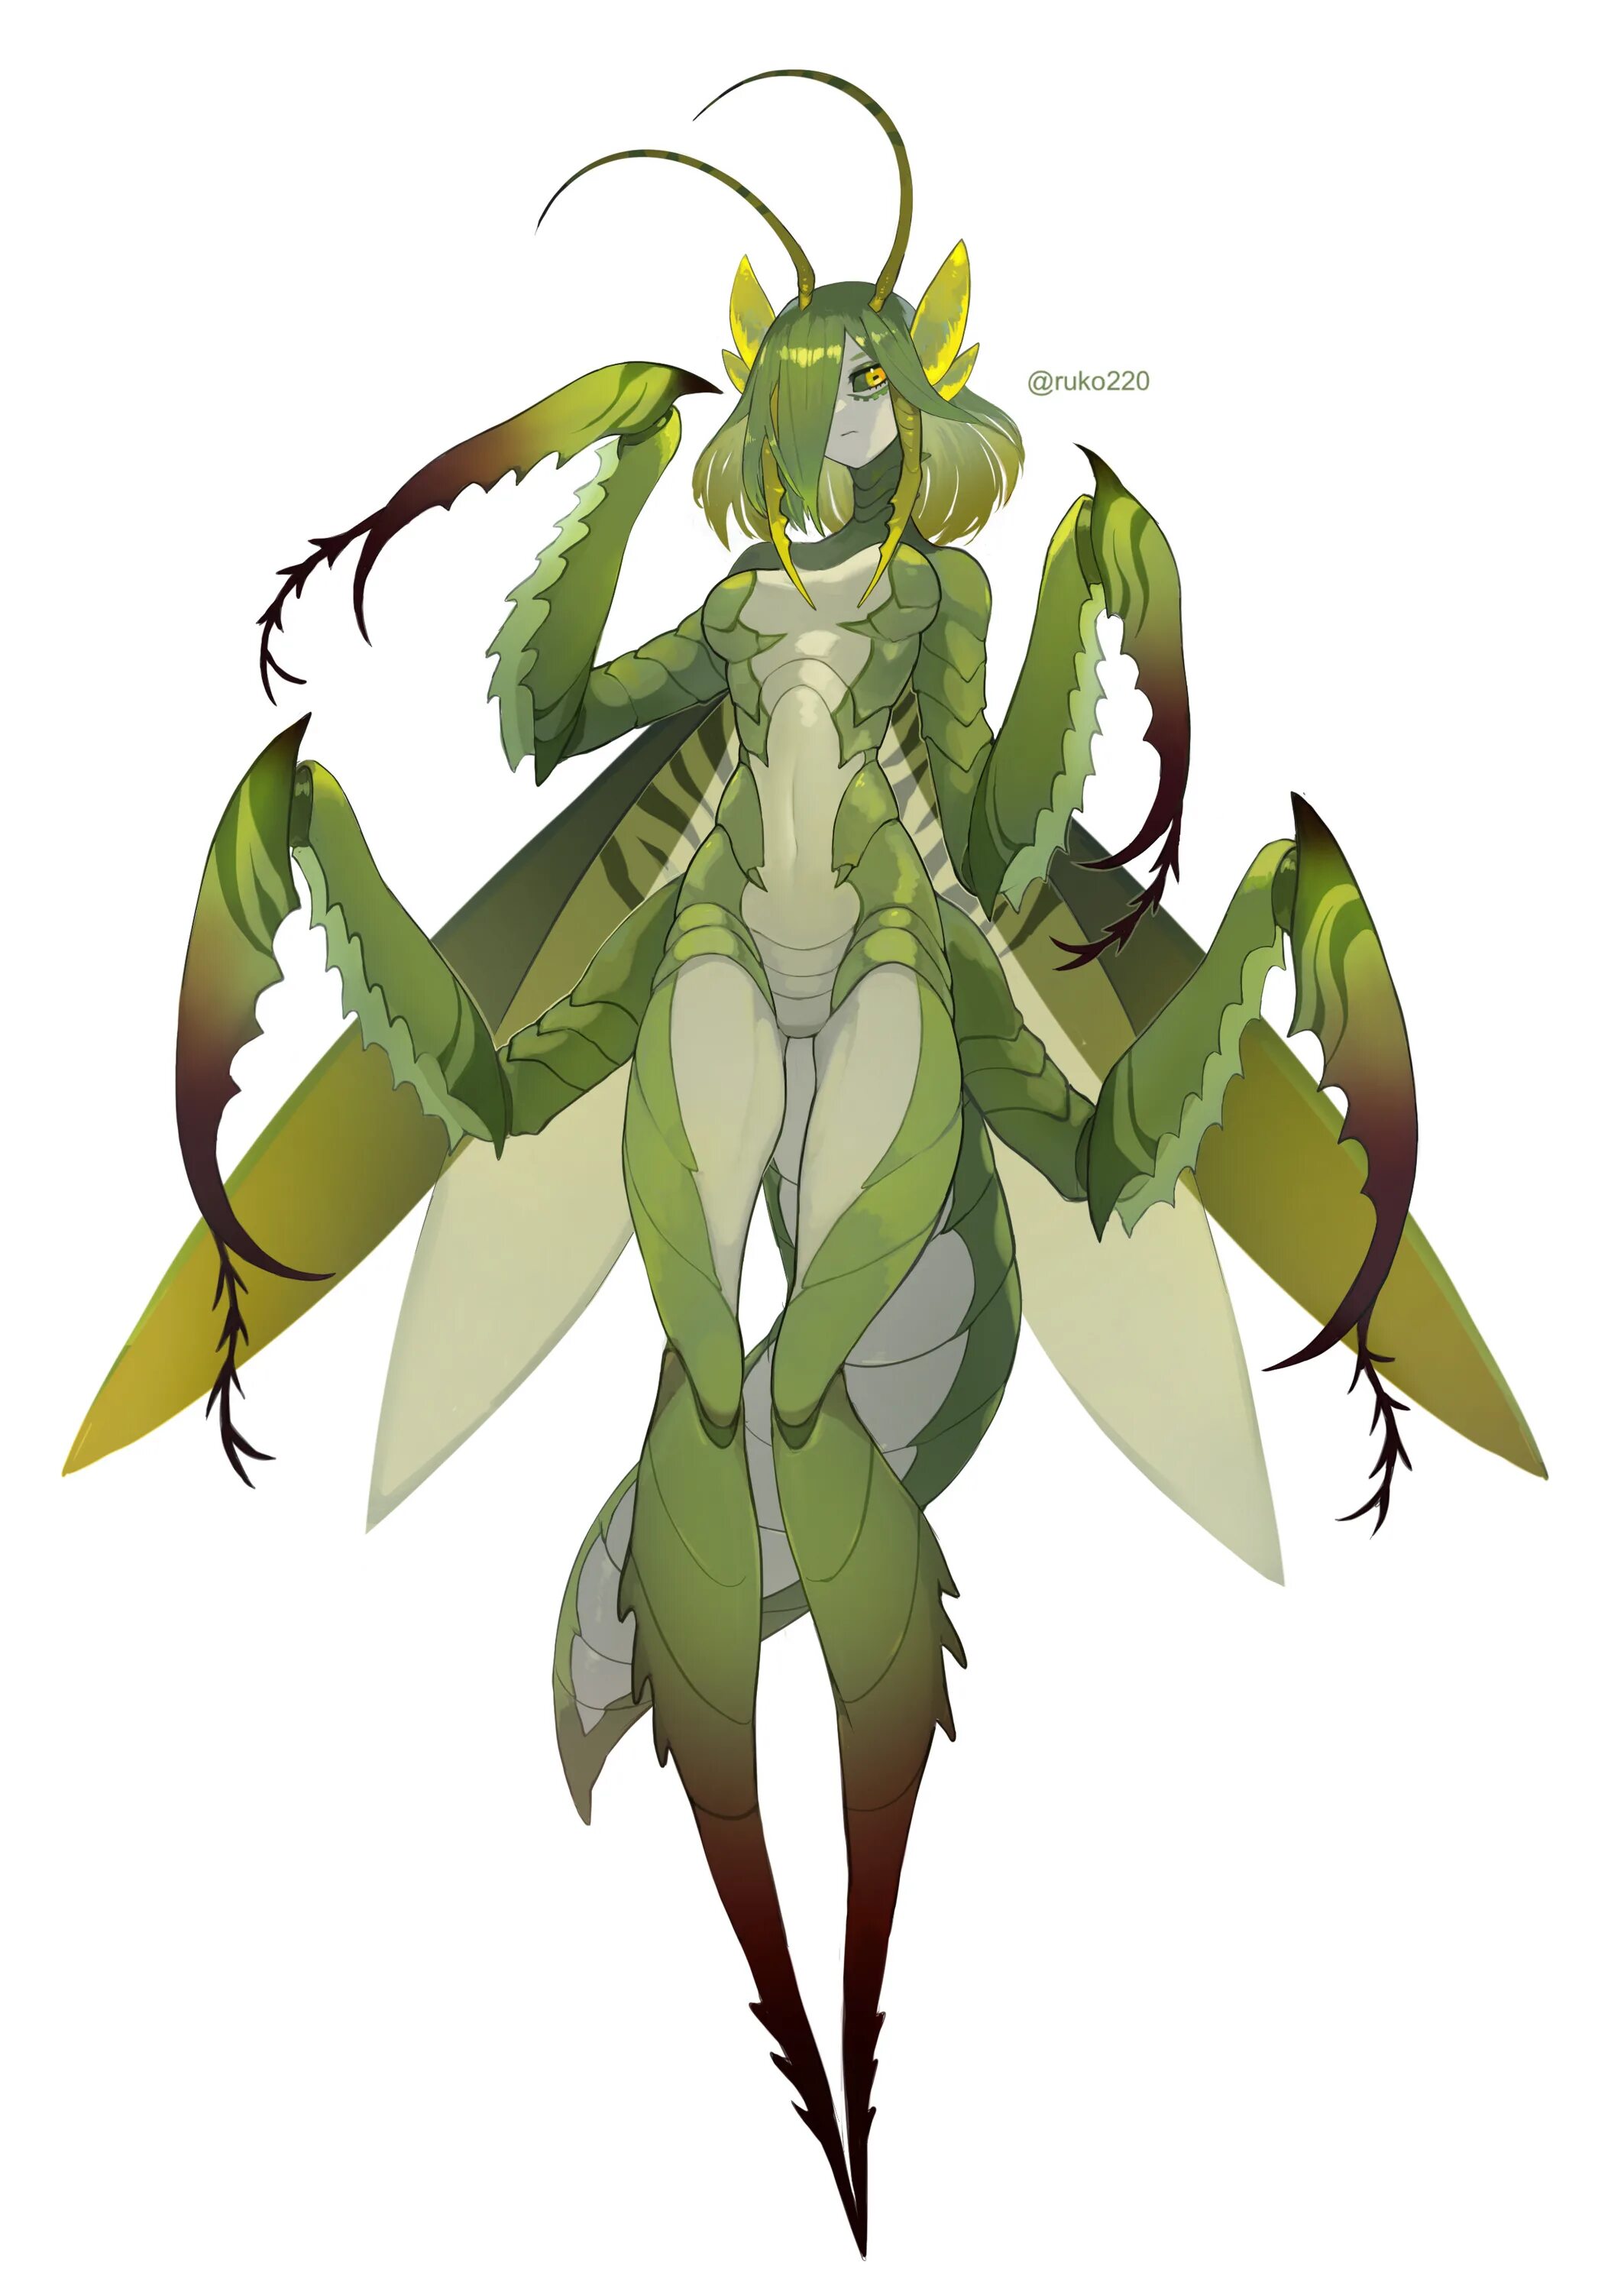 Богомол Monster girl Insectoid. Мантис 18. Инсектоиды богомолы Королева.